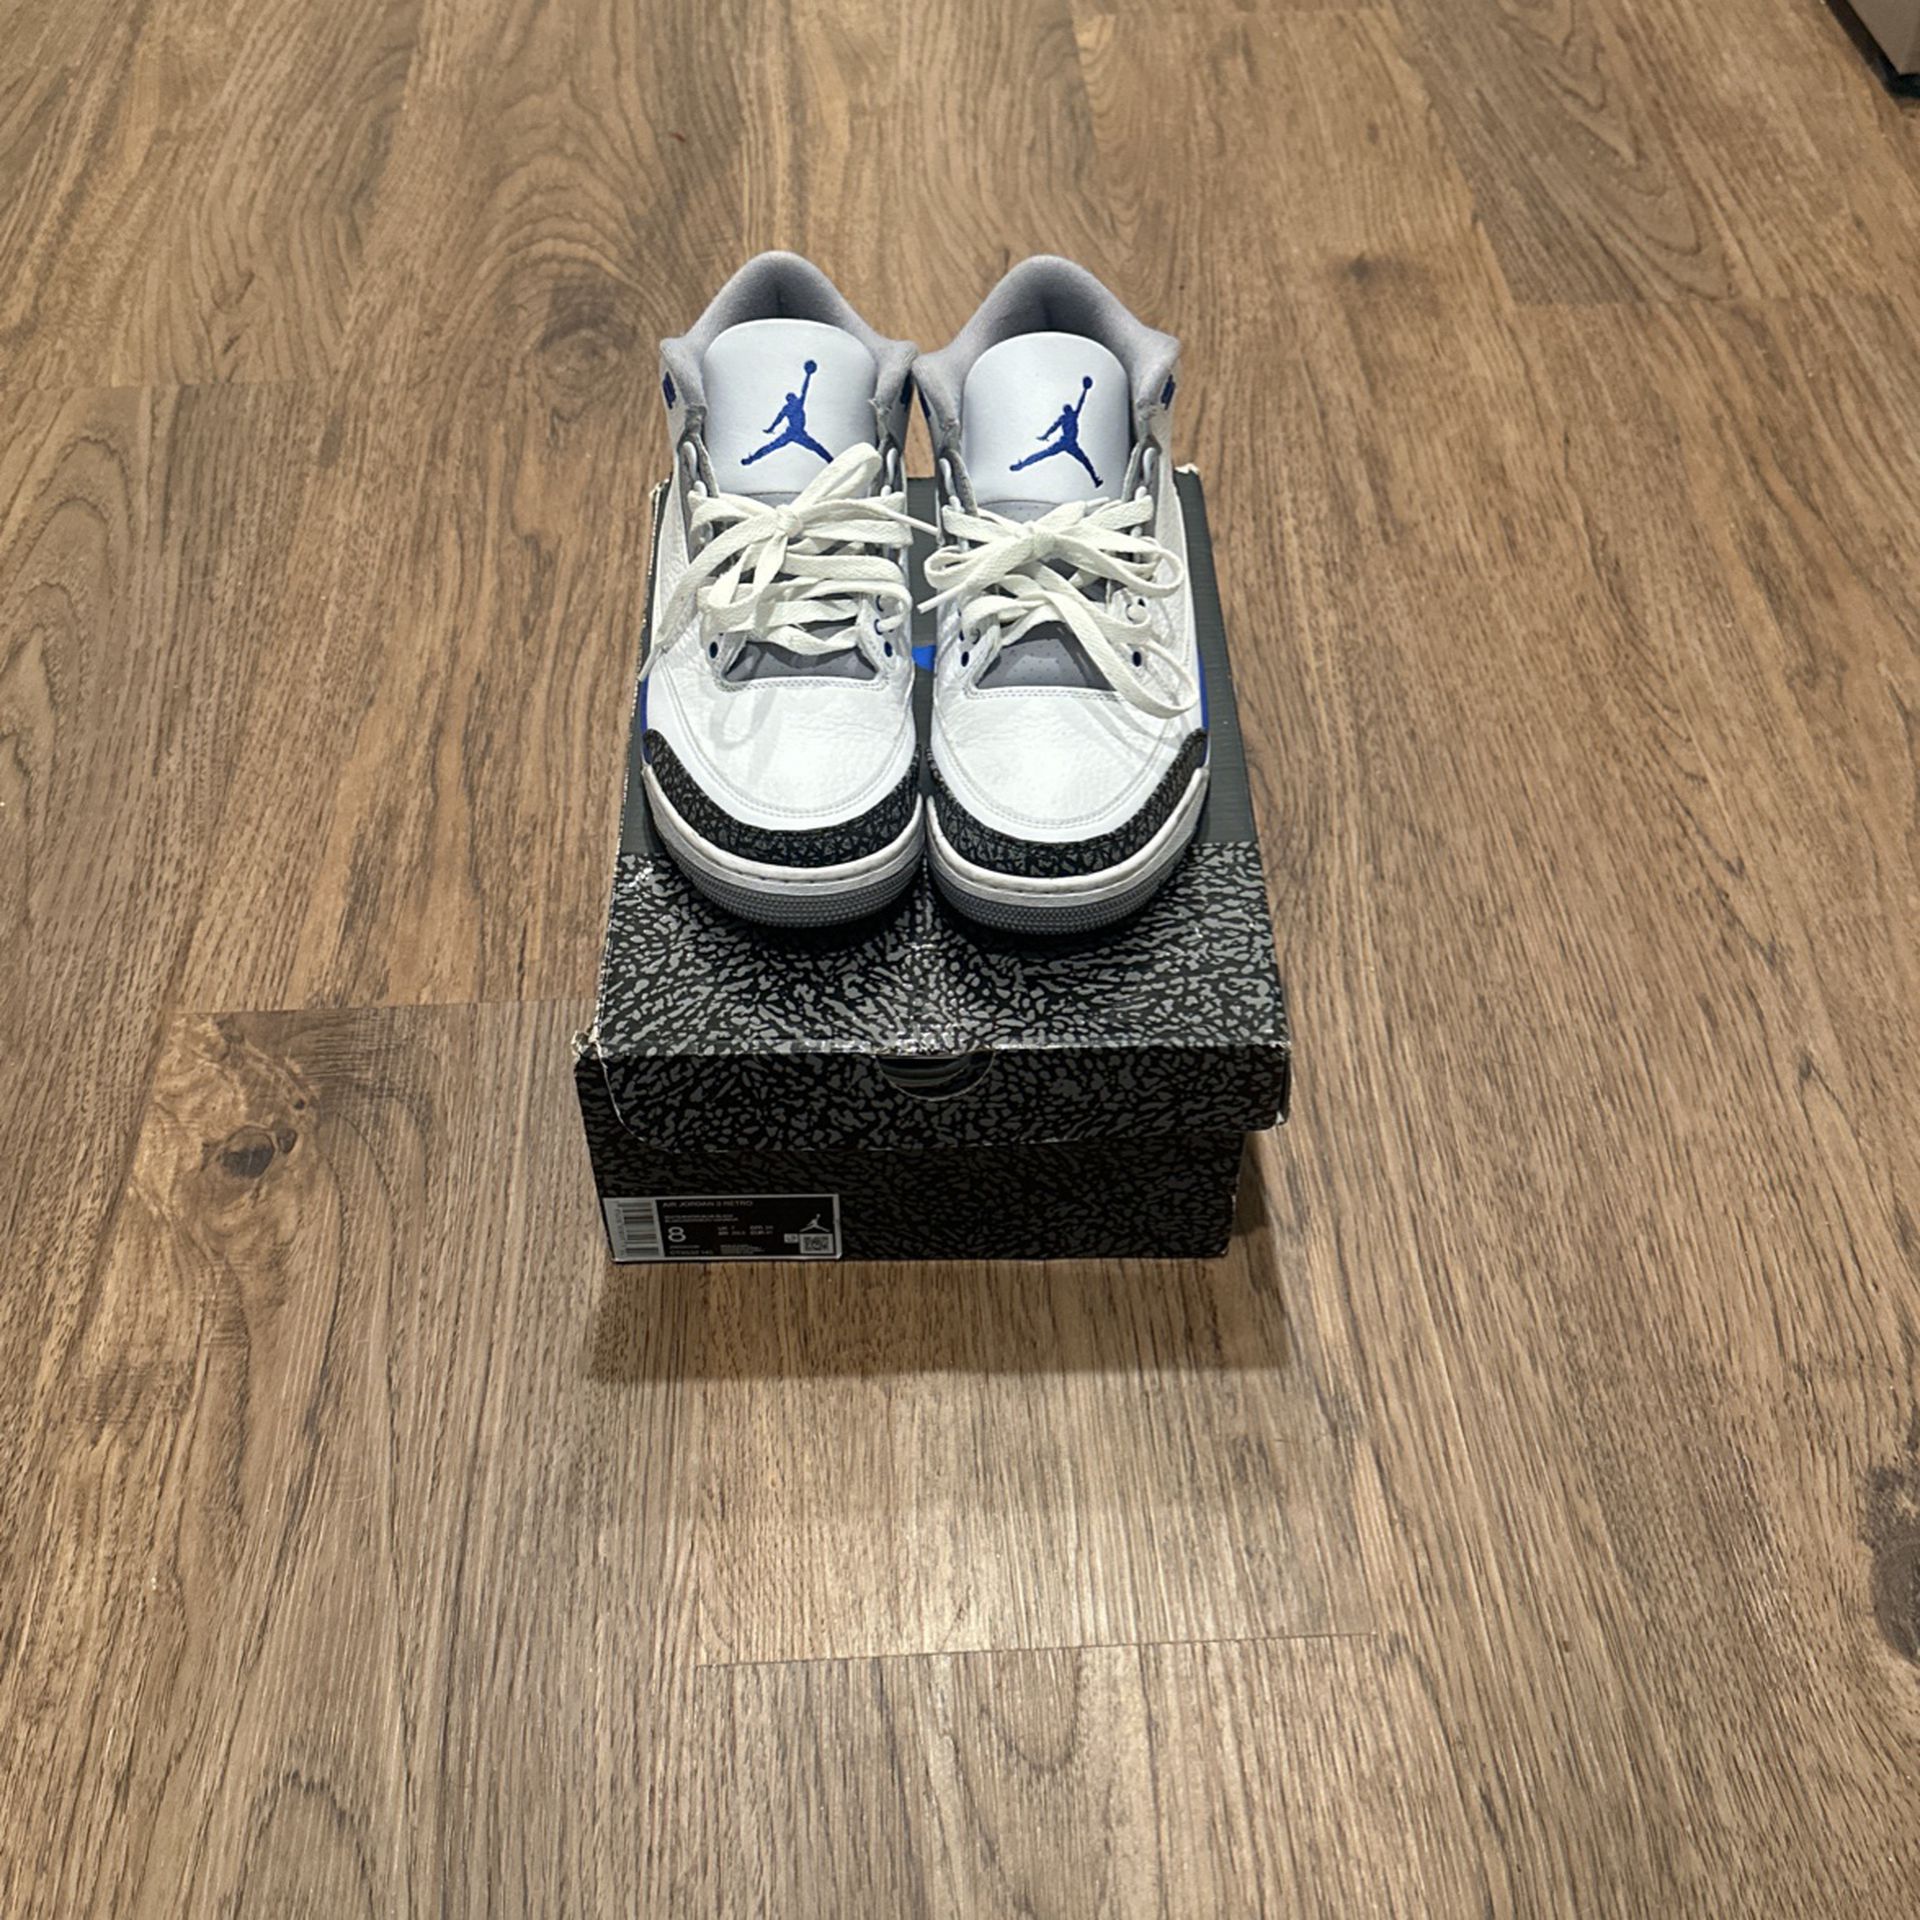 Jordan 3 Retro ‘Racer Blue’ Size 8 US Men Shoes 